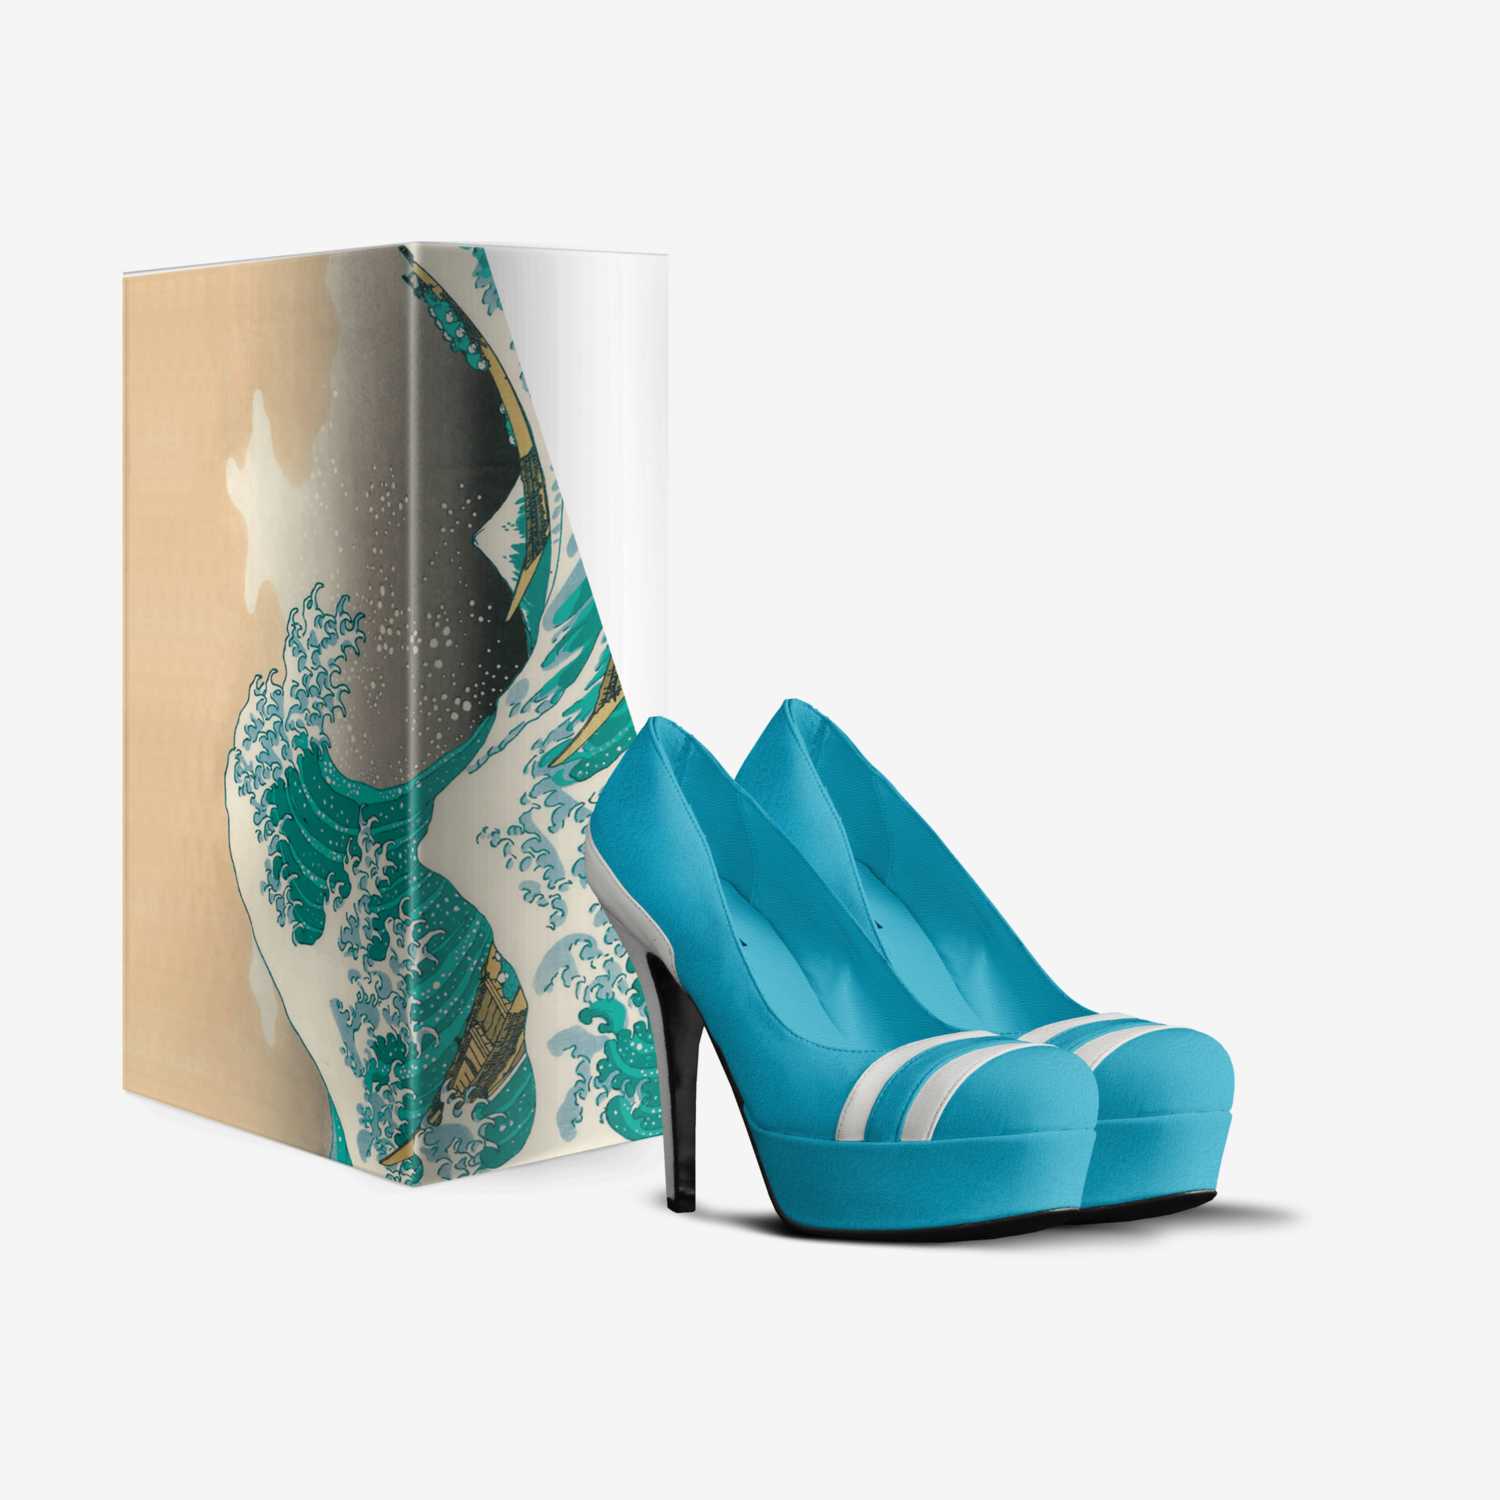 Nadin custom made in Italy shoes by Dina Aloxa | Box view